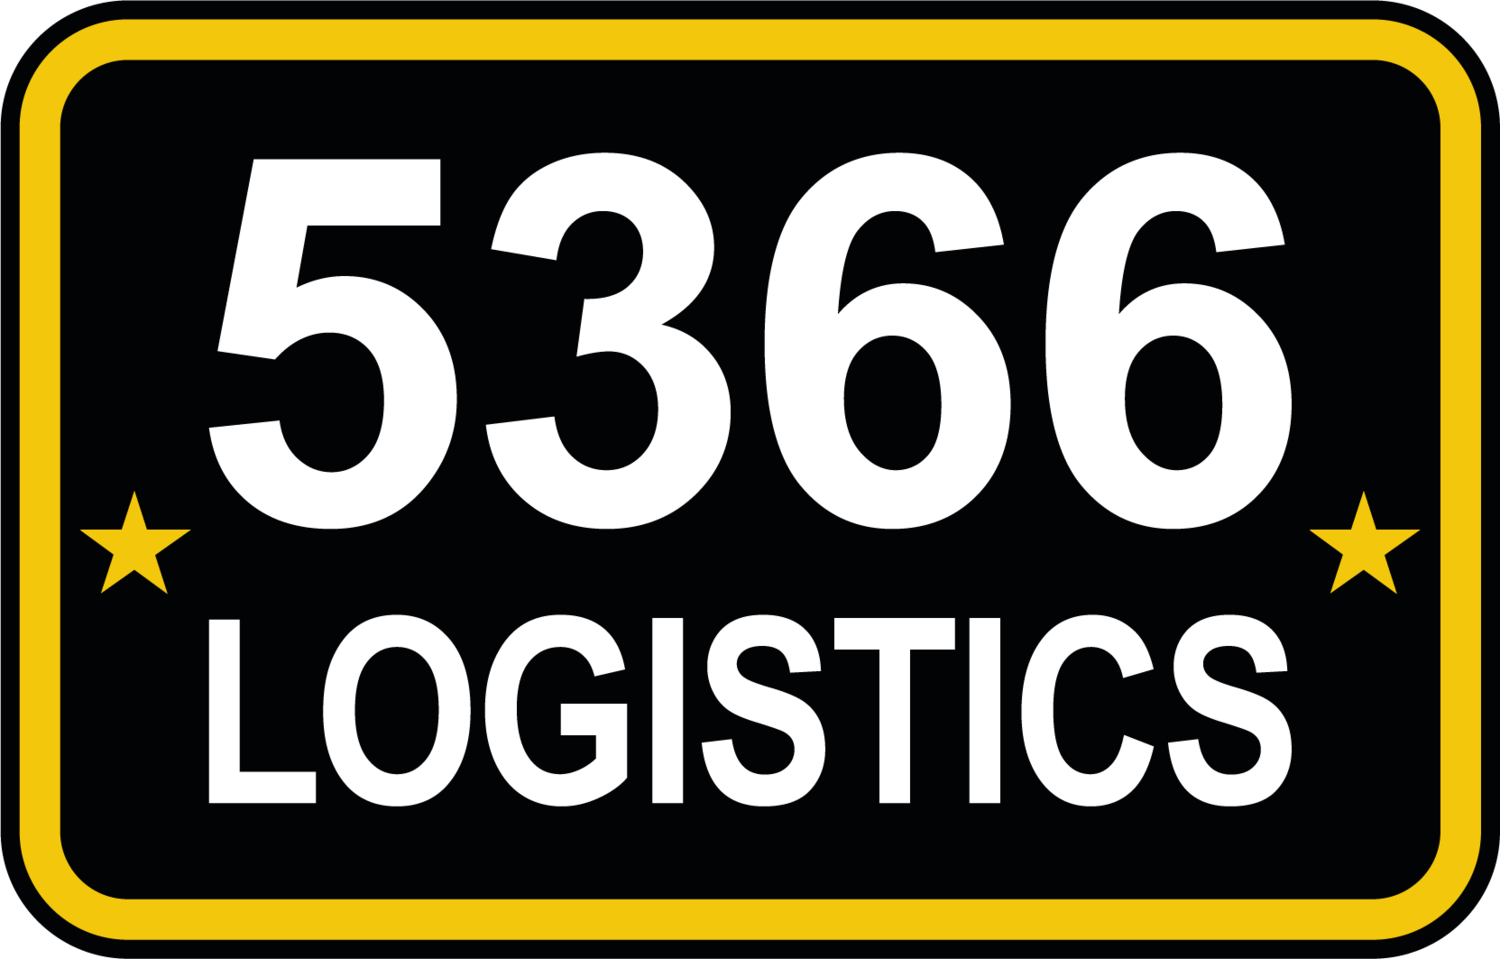 5366 Logistics